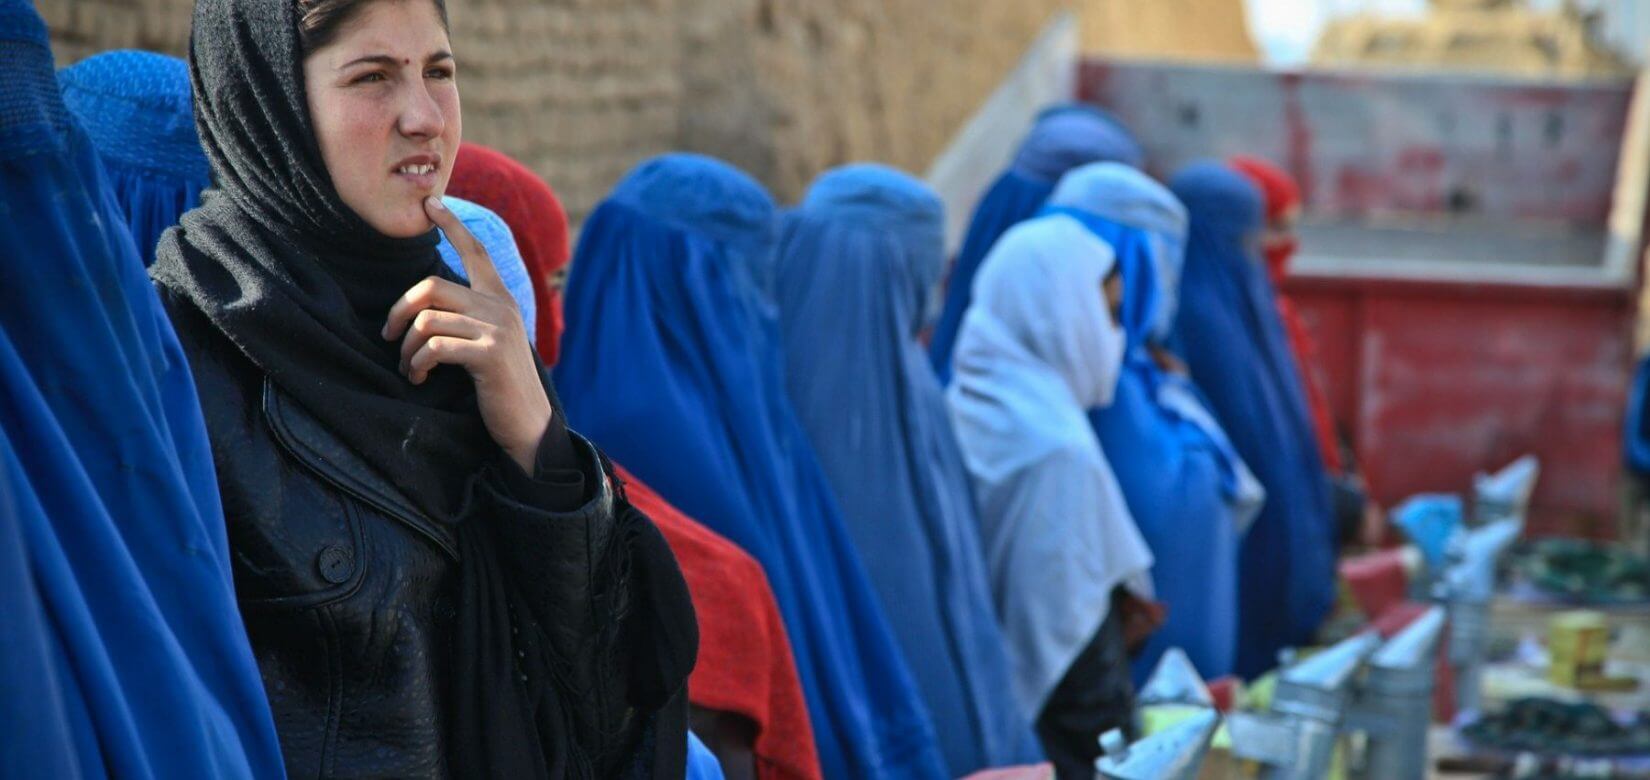 Ταλιμπάν: Οι οκτώ, πέρα από κάθε λογική, κανόνες για τις γυναίκες που η παραβίασή τους σημαίνει θάνατο